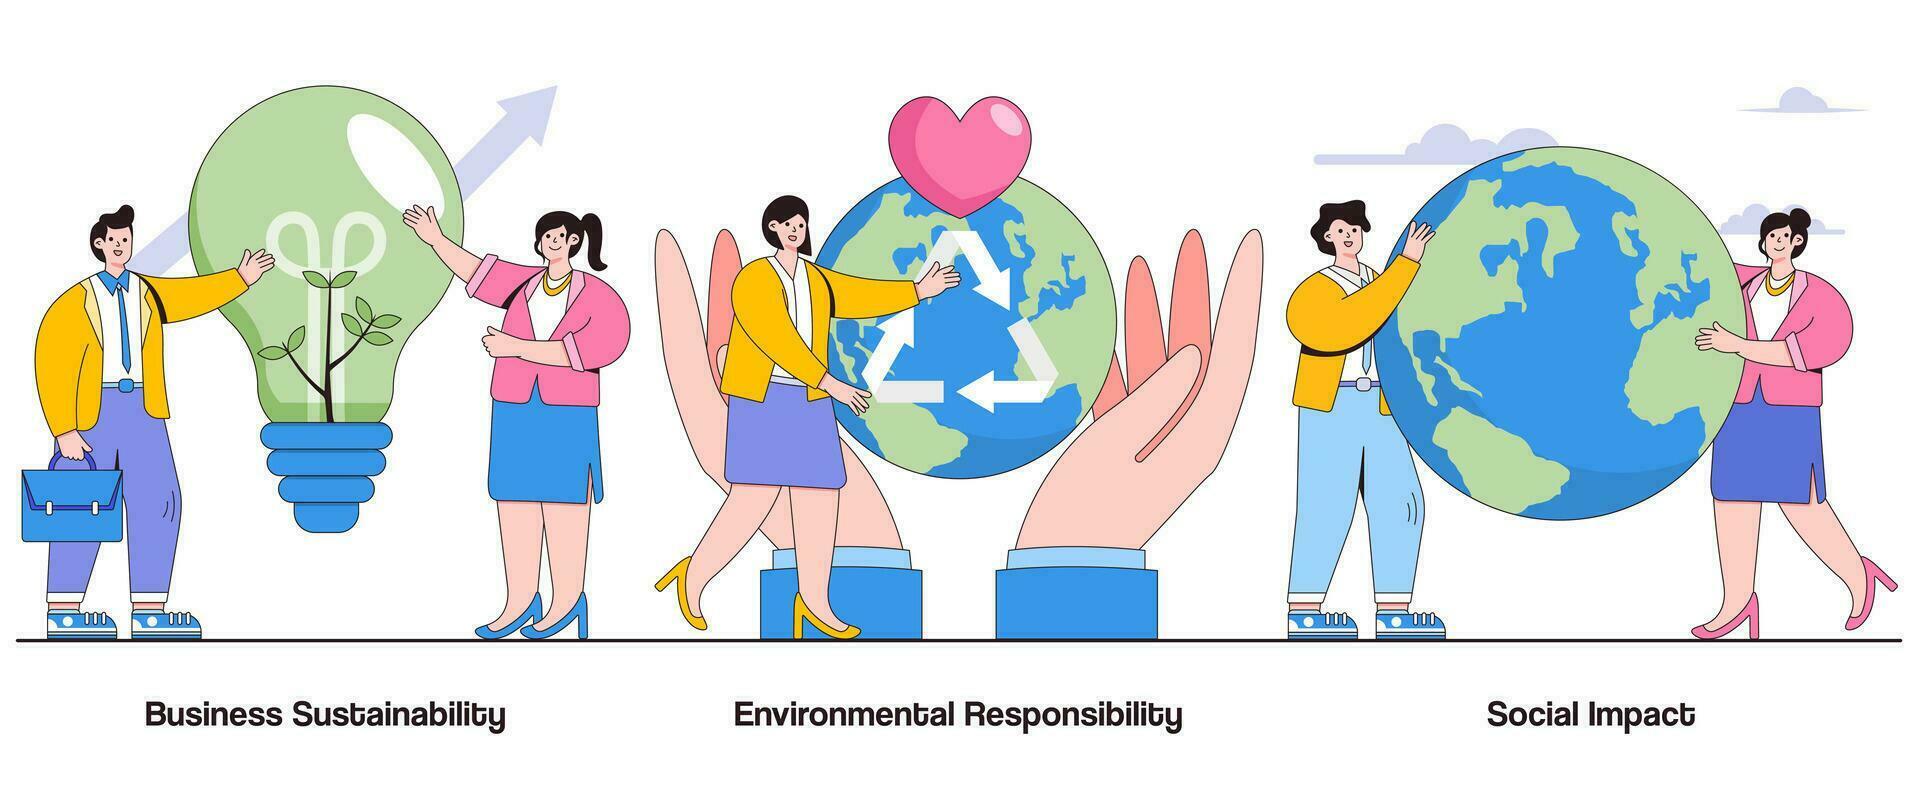 bedrijf duurzaamheid, milieu verantwoordelijkheid, sociaal gevolg concept met karakter. duurzame bedrijf praktijken abstract vector illustratie set. milieuvriendelijk initiatieven metafoor